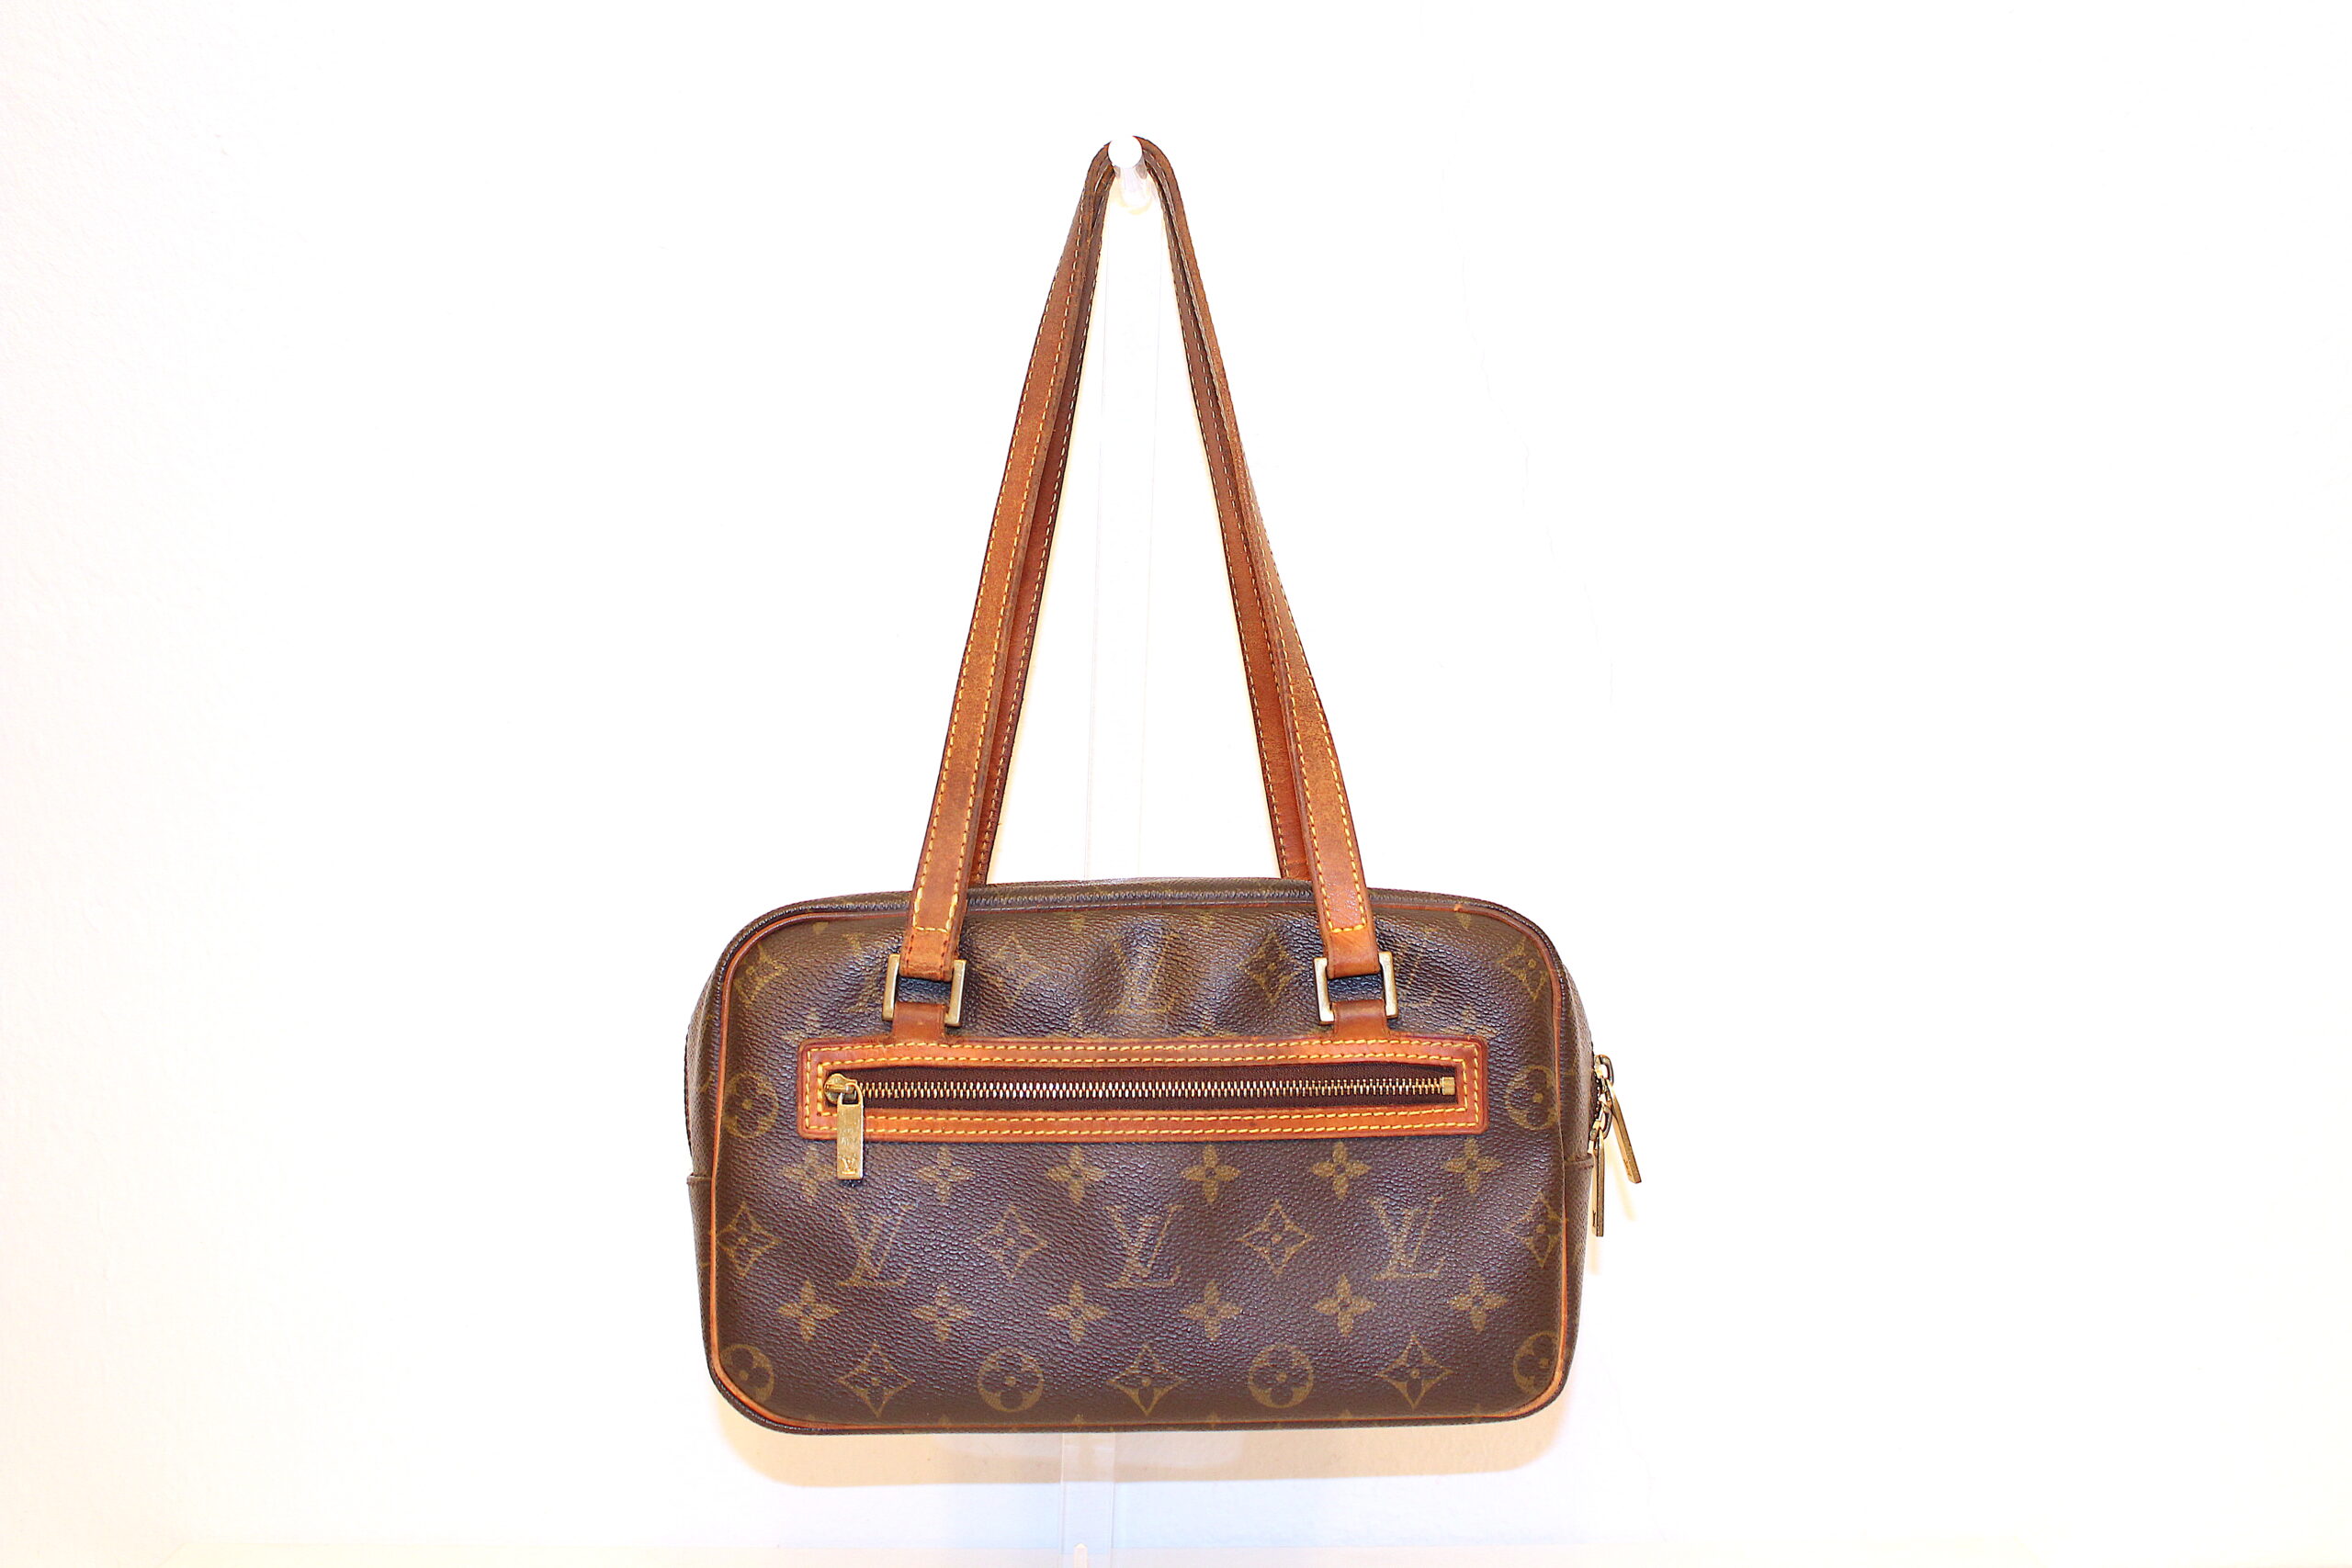 Welche Louis Vuitton Tasche ist dieses Model? (Modell)